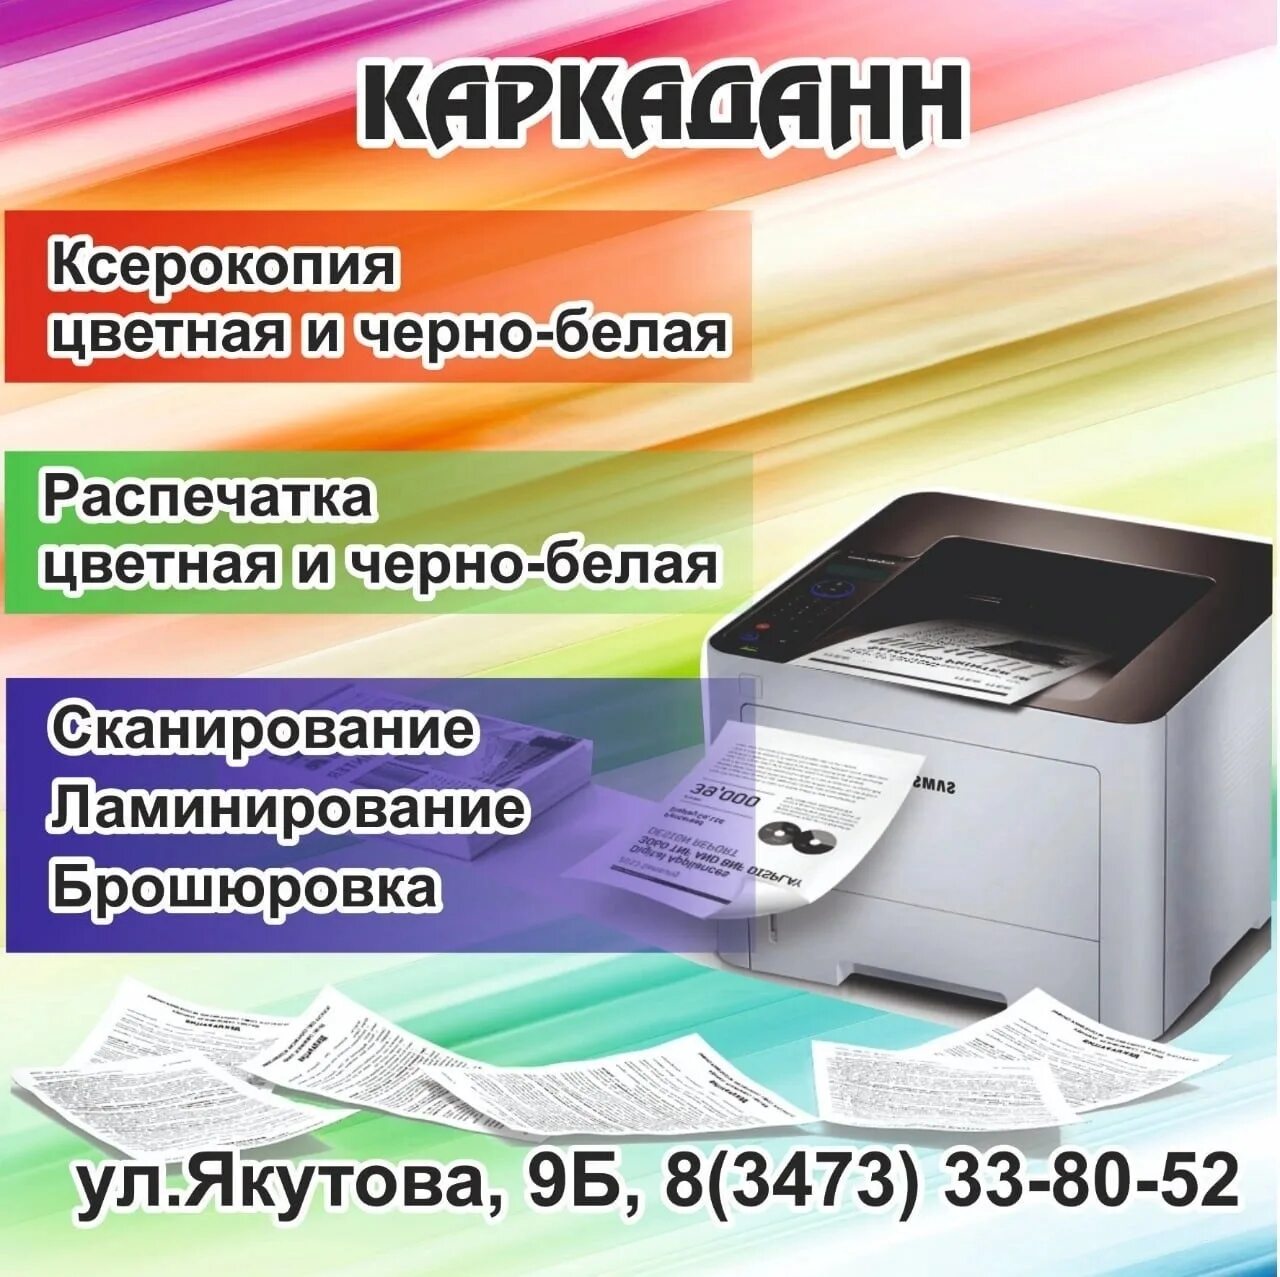 Ксерокопия распечатка сканирование. Реклама ксерокопии и распечатки. Ксерокопия сканирование ламинирование. Ксерокопирование ламинирование. Объявление распечатка